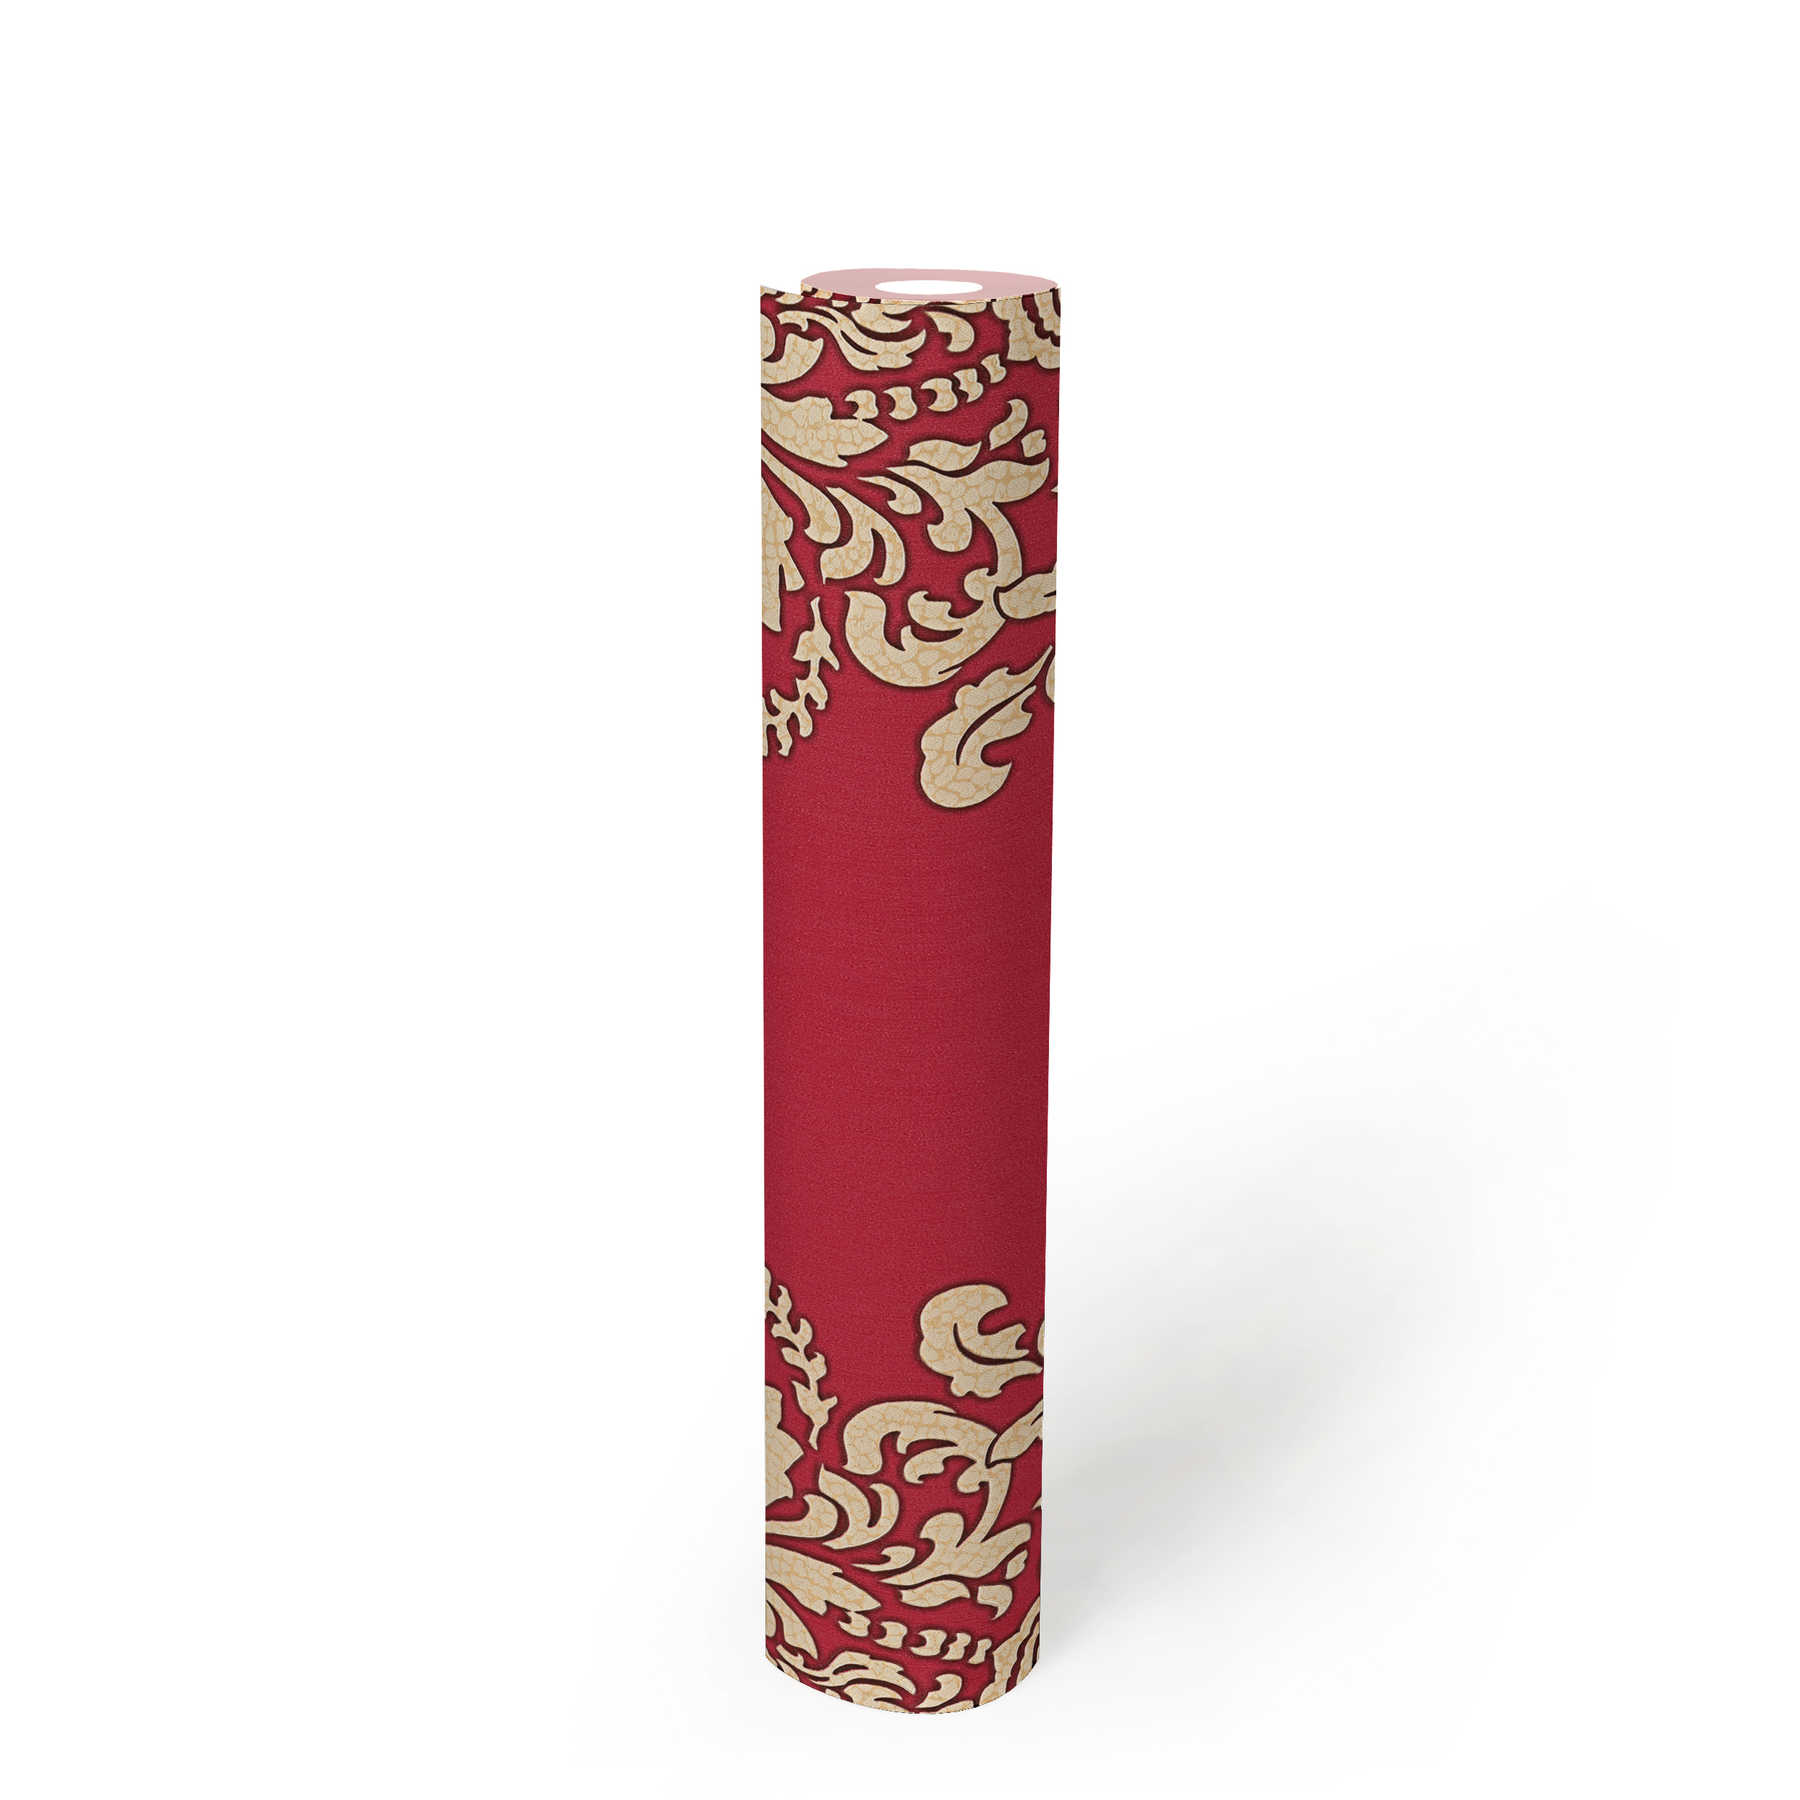             Papel pintado ornamental con efecto craquelado - beige, rojo
        